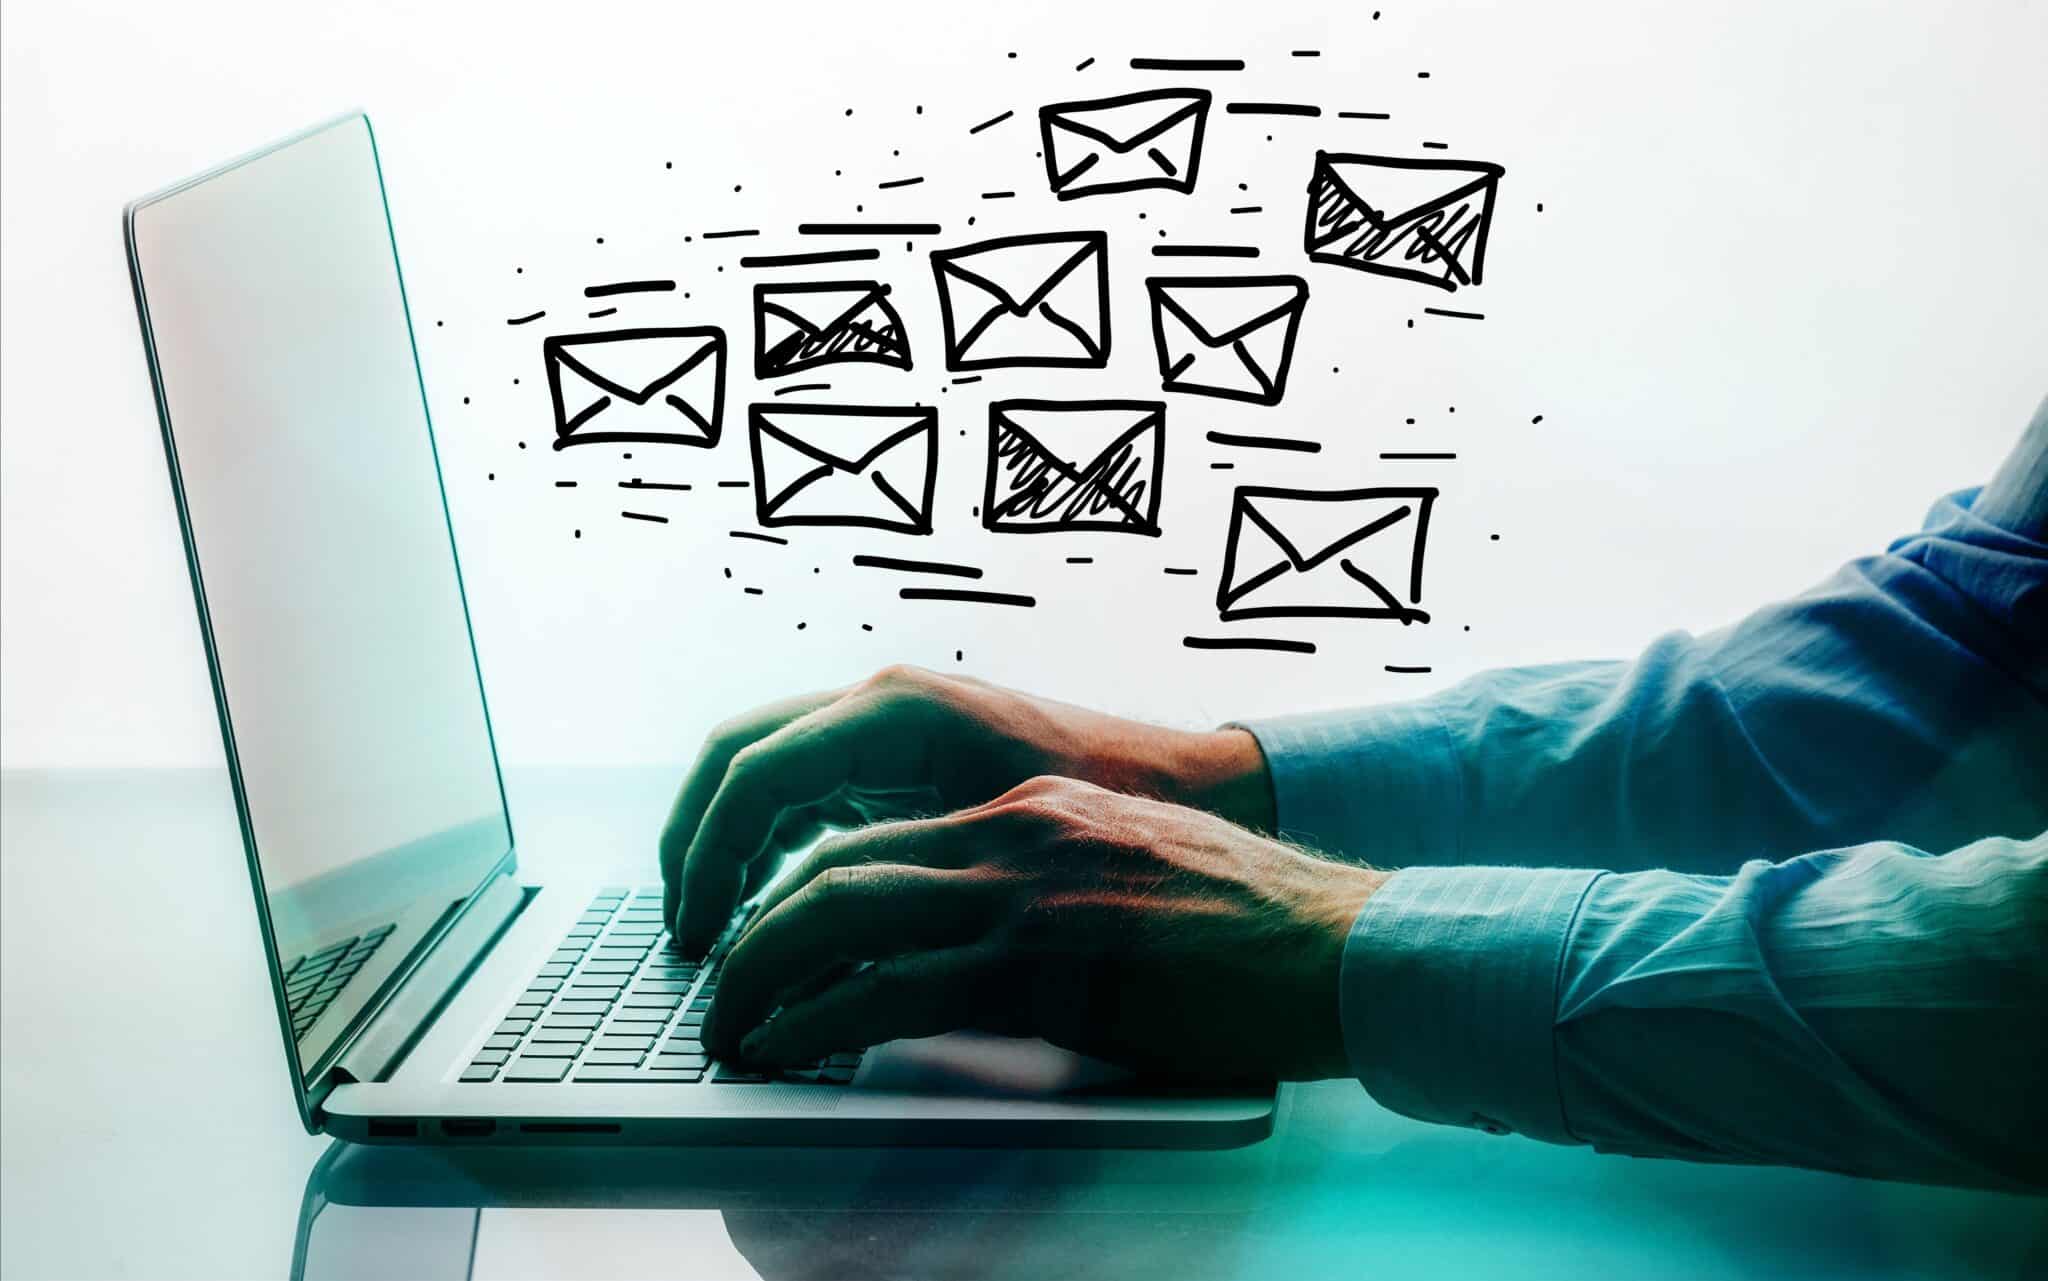 Bilde som illustrerer e-postmarkedsføring ved å vise laptop med hender som skriver på tastaturet og tegnede konvolutter som flyr ut av skjermen..